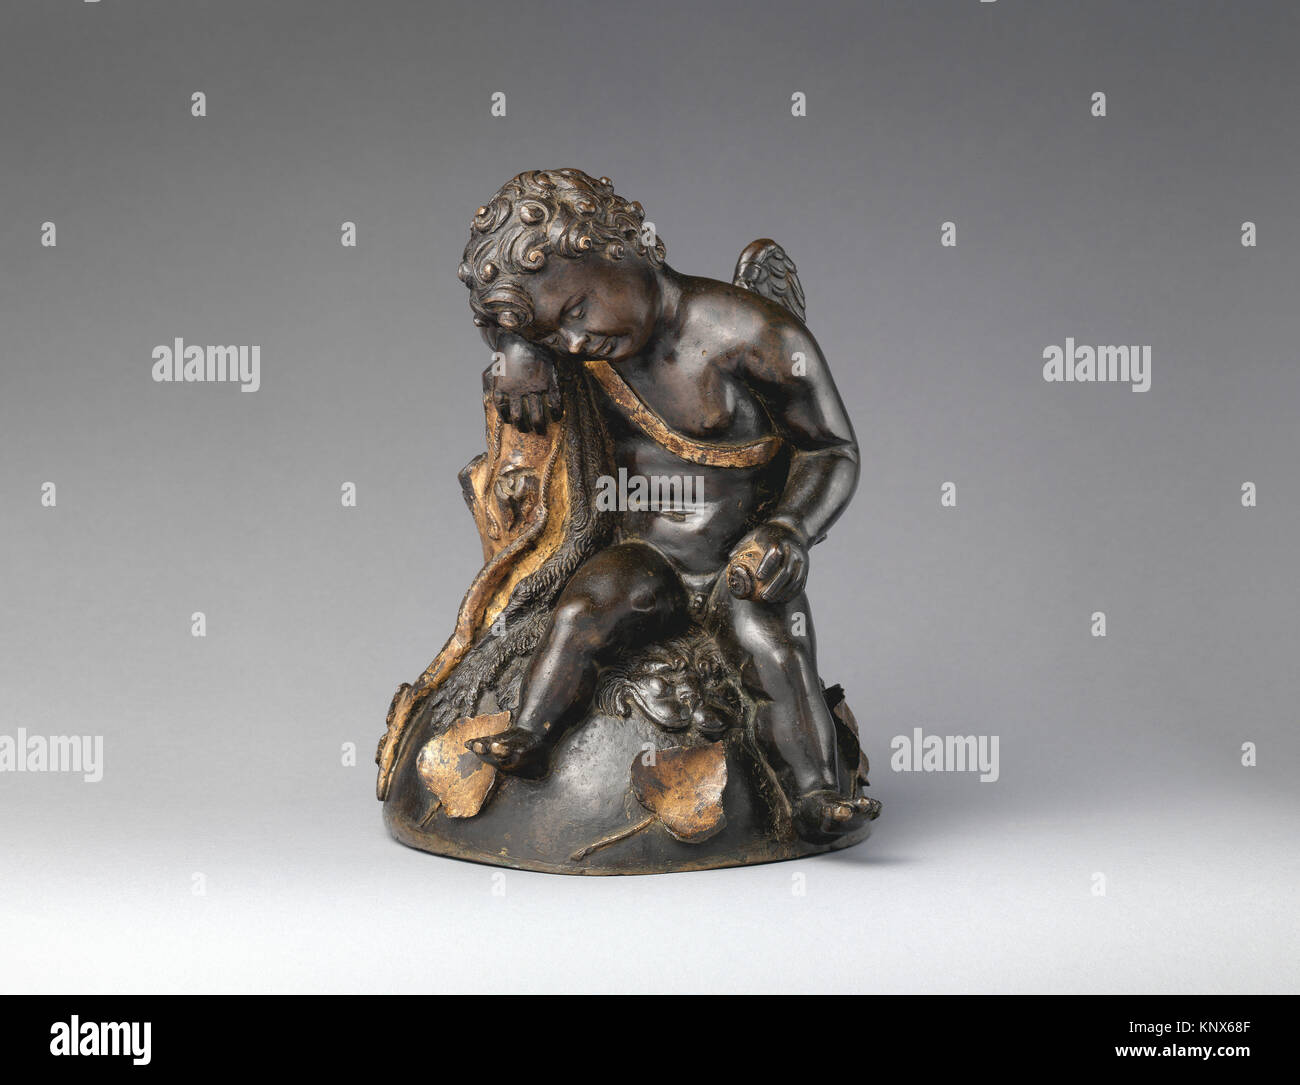 Cupidon à dormir. Date : début du 16ème siècle, Culture : italien, Venise ; technique : Bronze, doré en partie ; Dimensions : 8 7/8 x 8 in. (22,5 x 20,3 cm) ; Banque D'Images